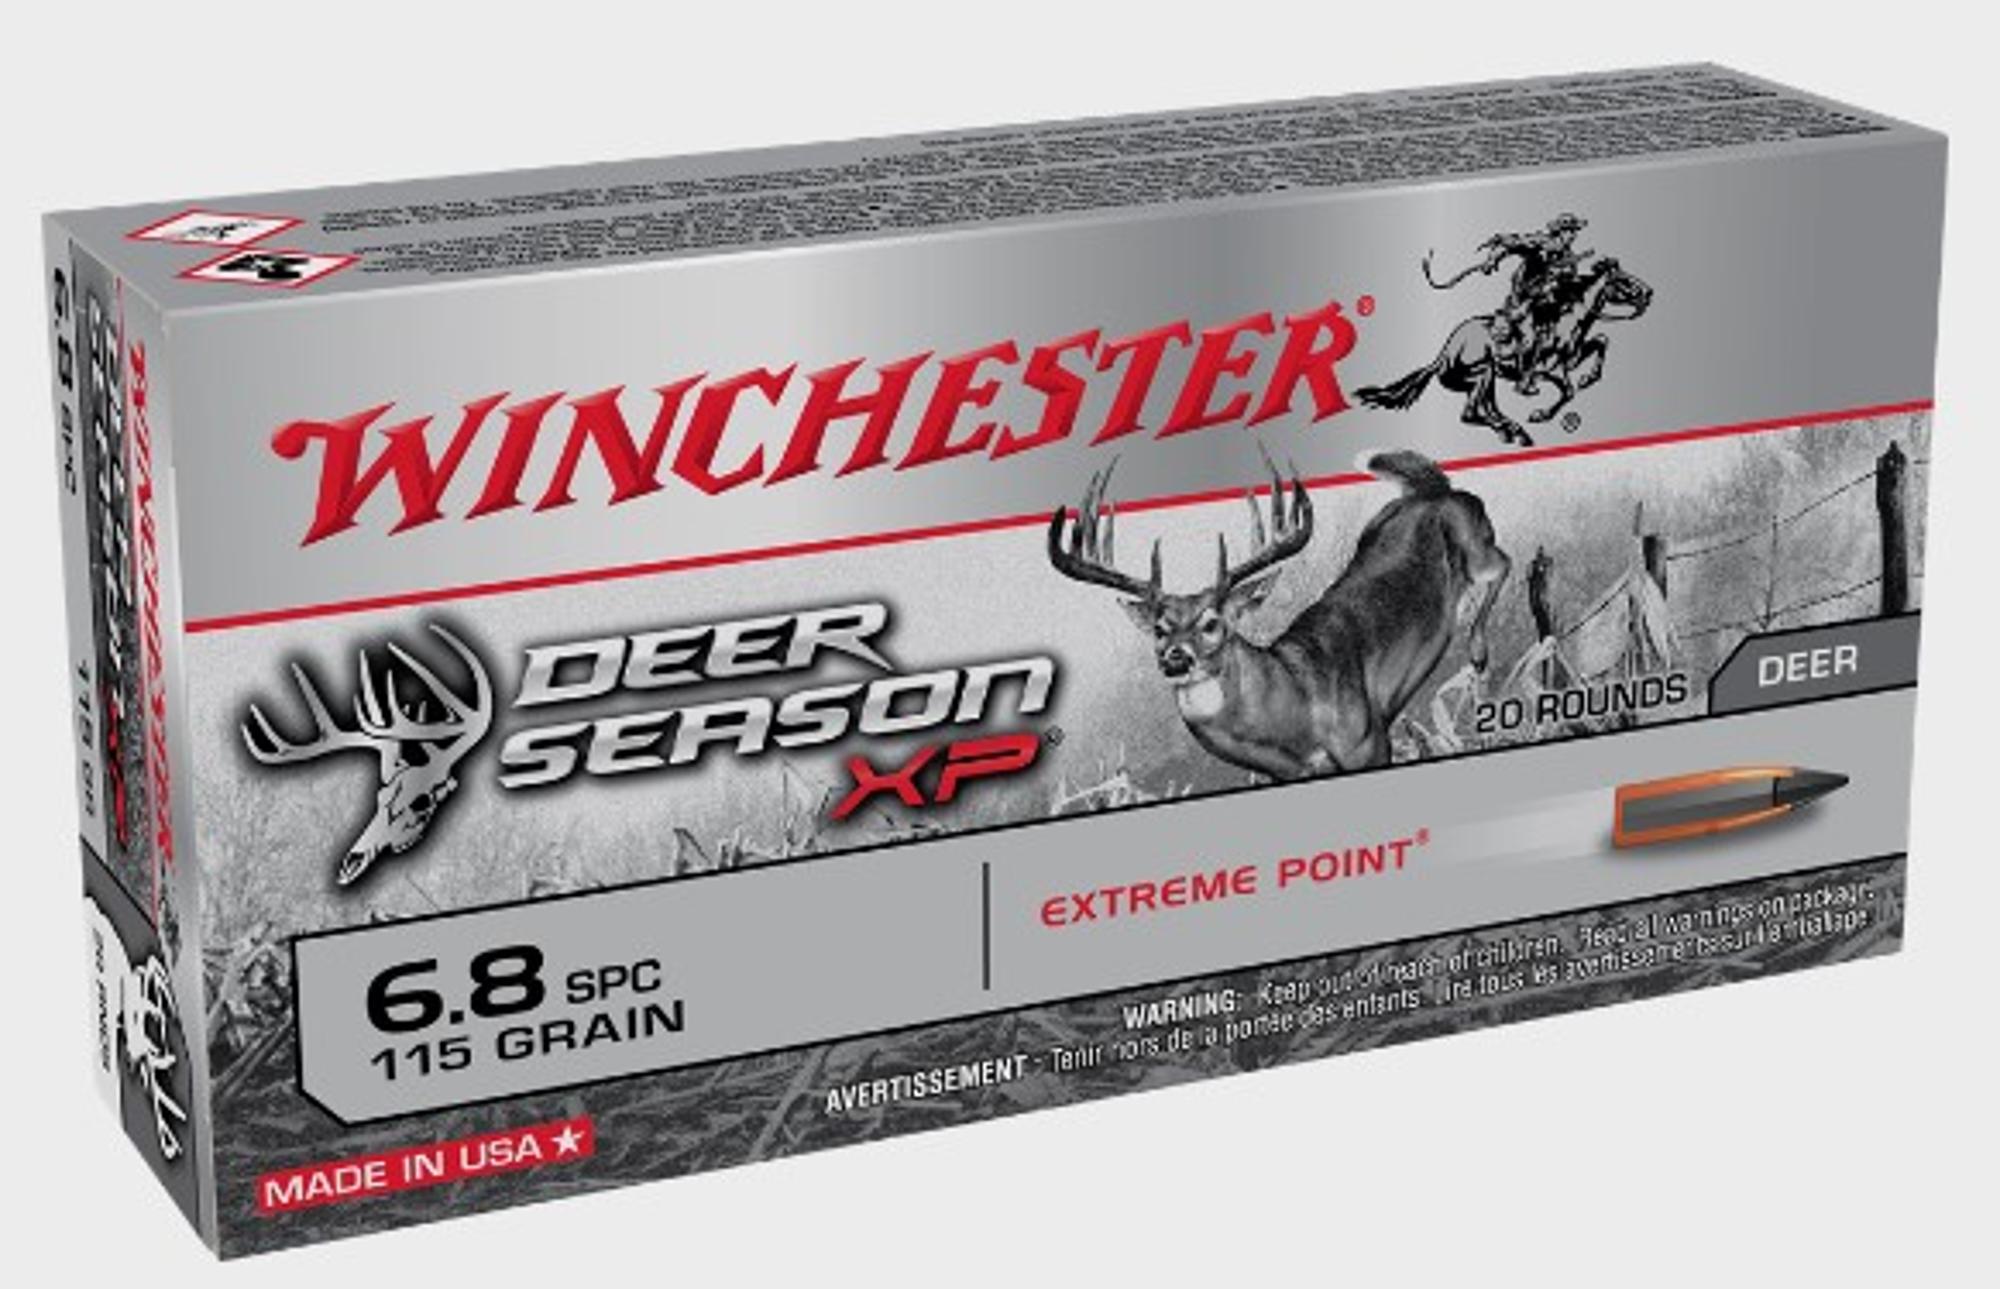 Winchester Deer Season Xp 6.8spc 115gr